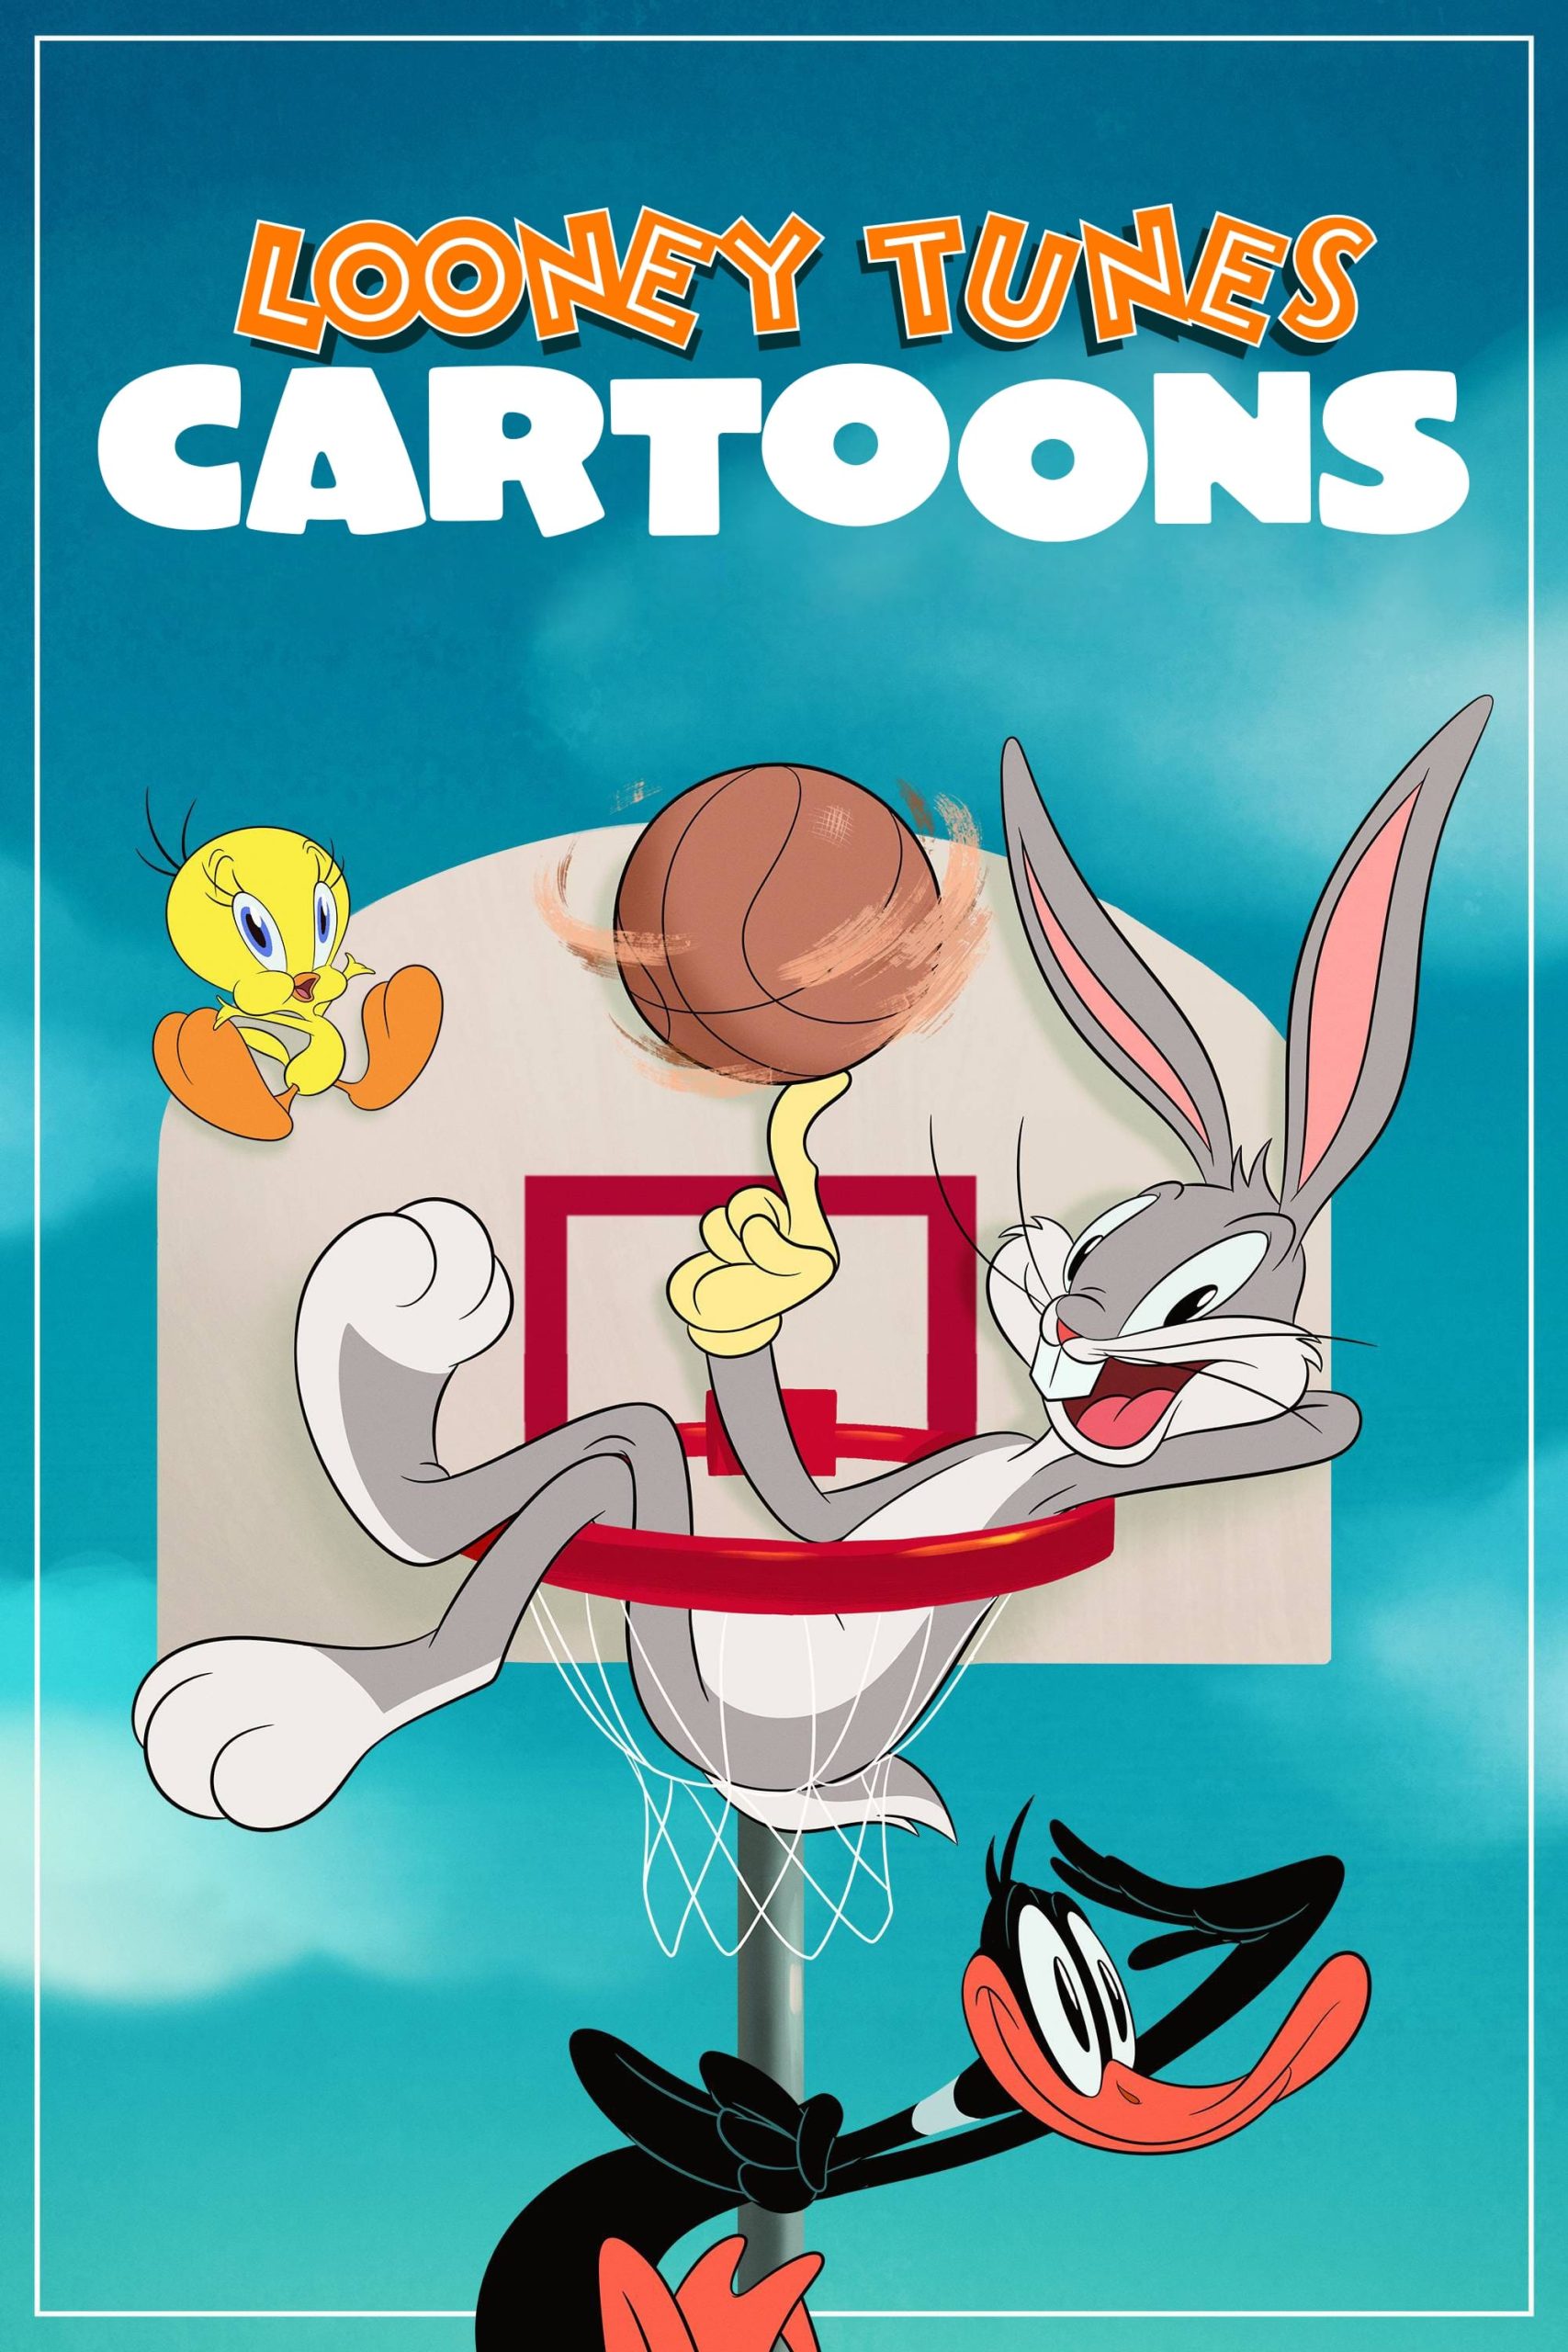 دانلود صوت دوبله سریال Looney Tunes Cartoons